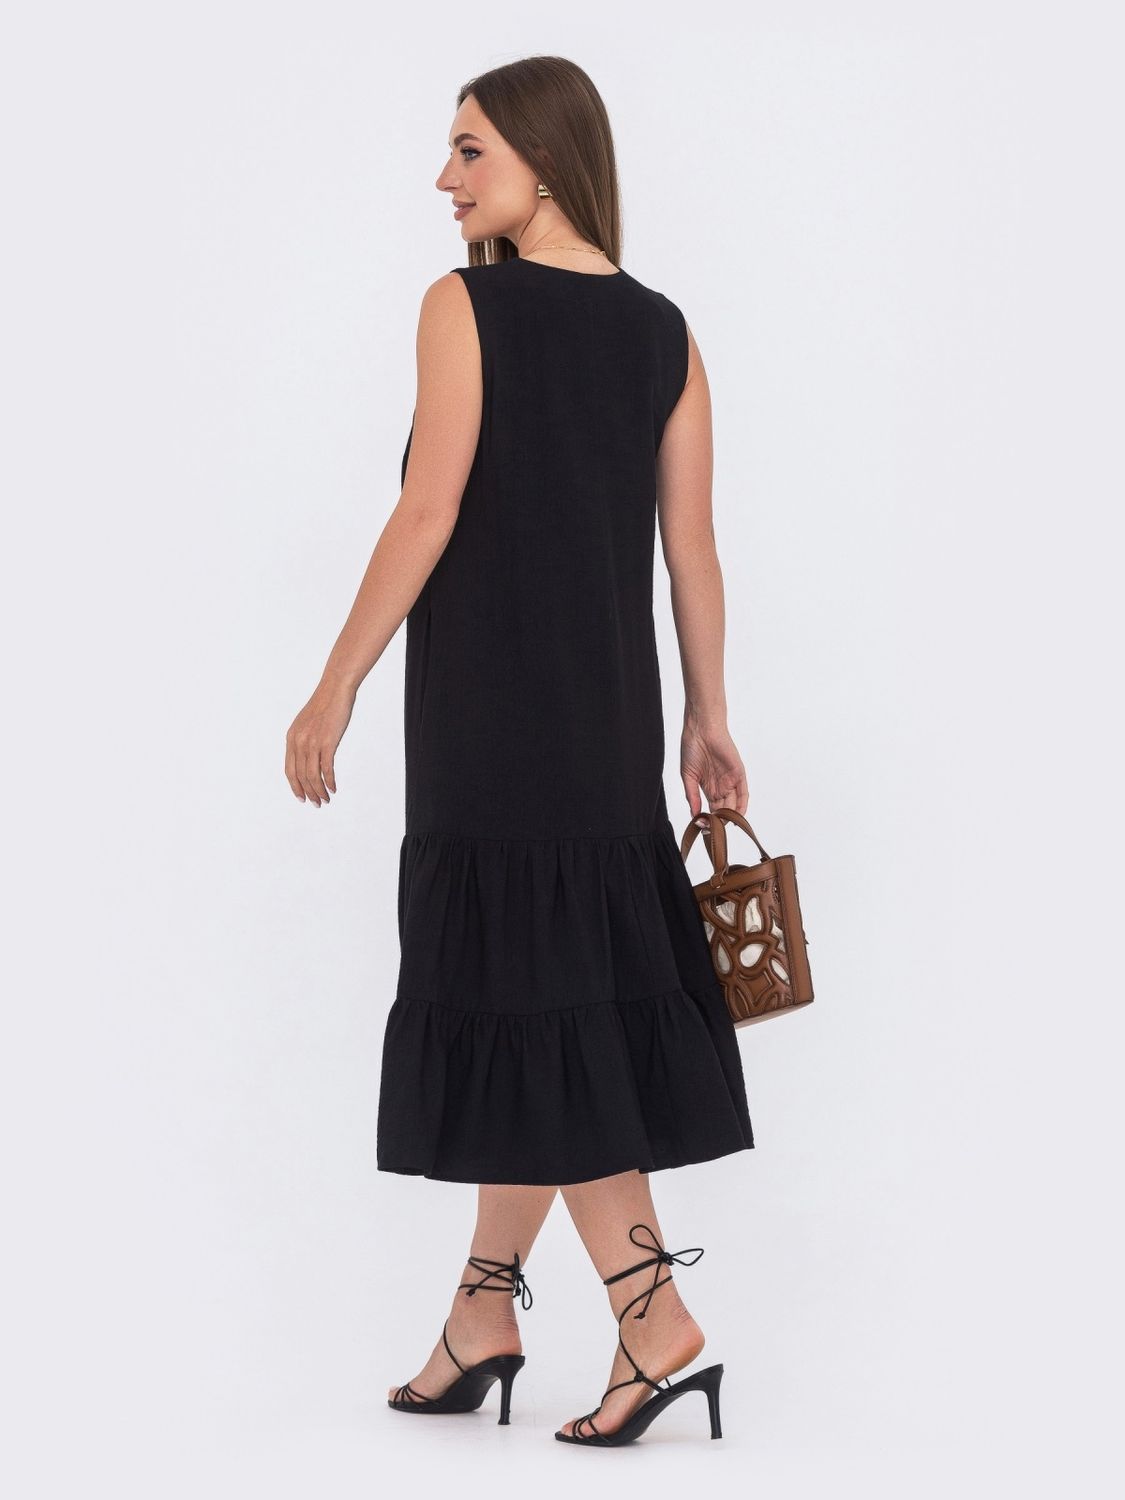 Літнє лляне плаття А-силуету чорного кольору - фото